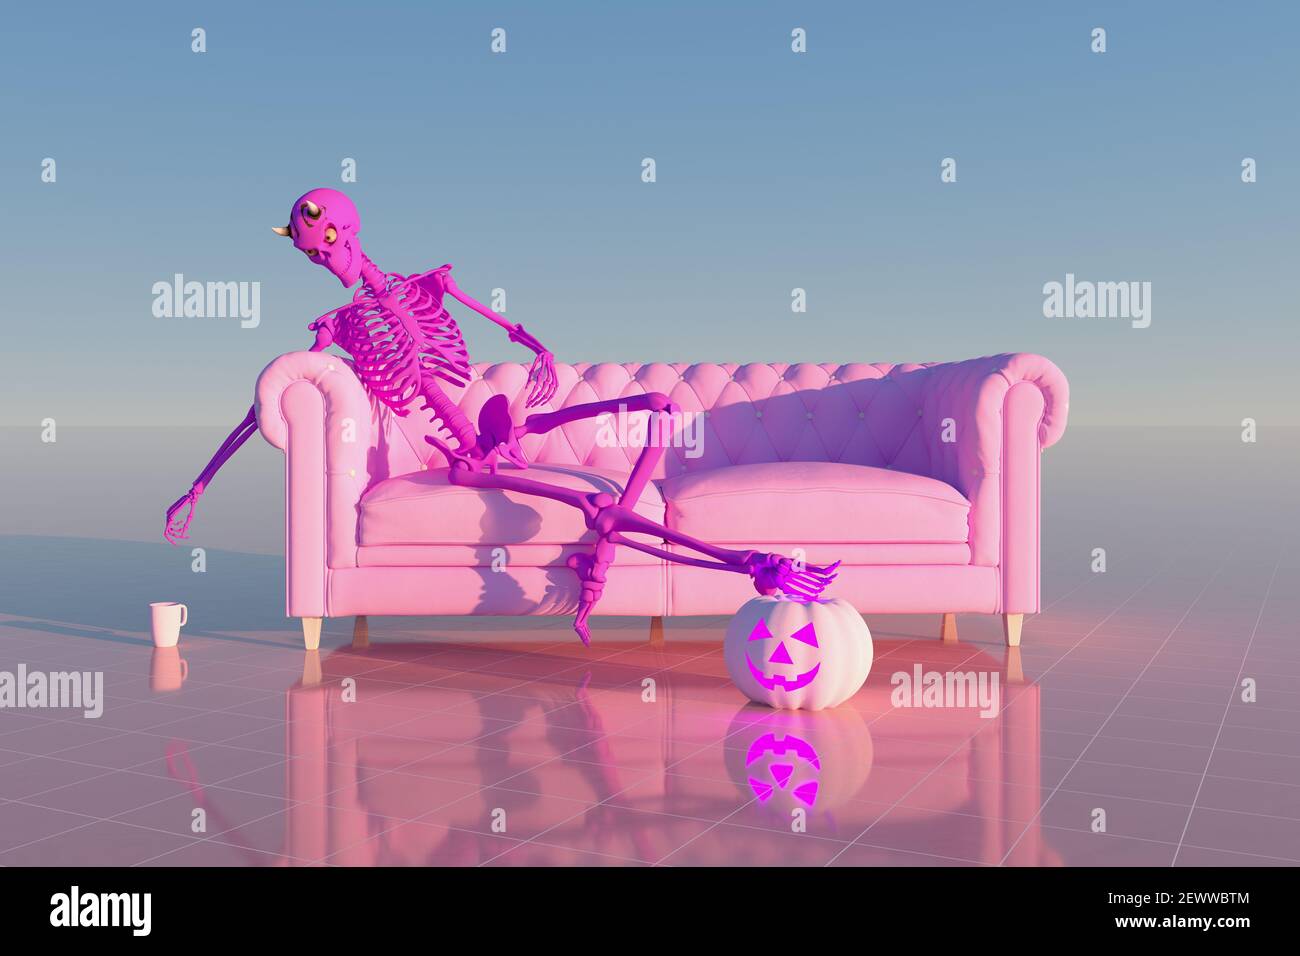 Illustration de rendu 3D d'un squelette de diable assis sur Un canapé et une citrouille au sol - Halloween concept Banque D'Images